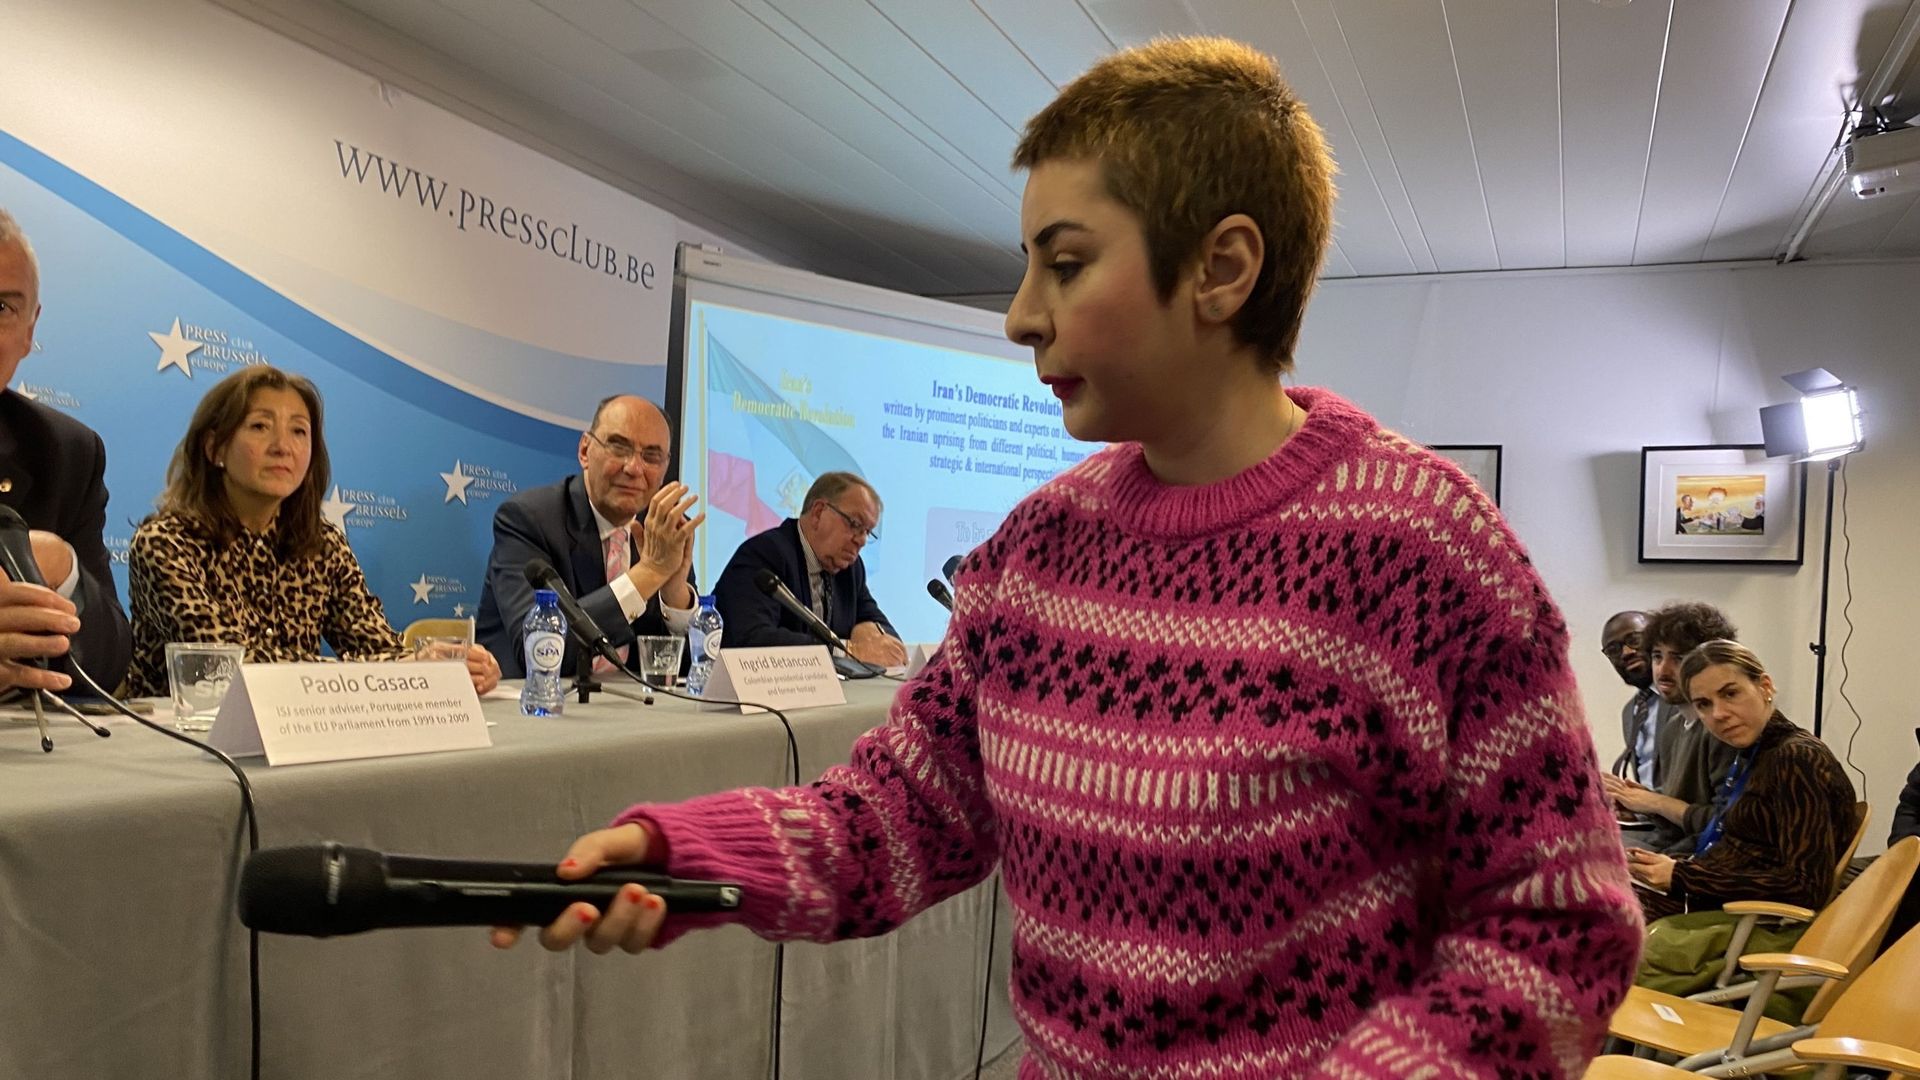 Une jeune femme kurde a interpellé les intervenants lors de la Conférence de presse organisée par le CNRI, le 10 janvier 2022, au Brussels Press Club.